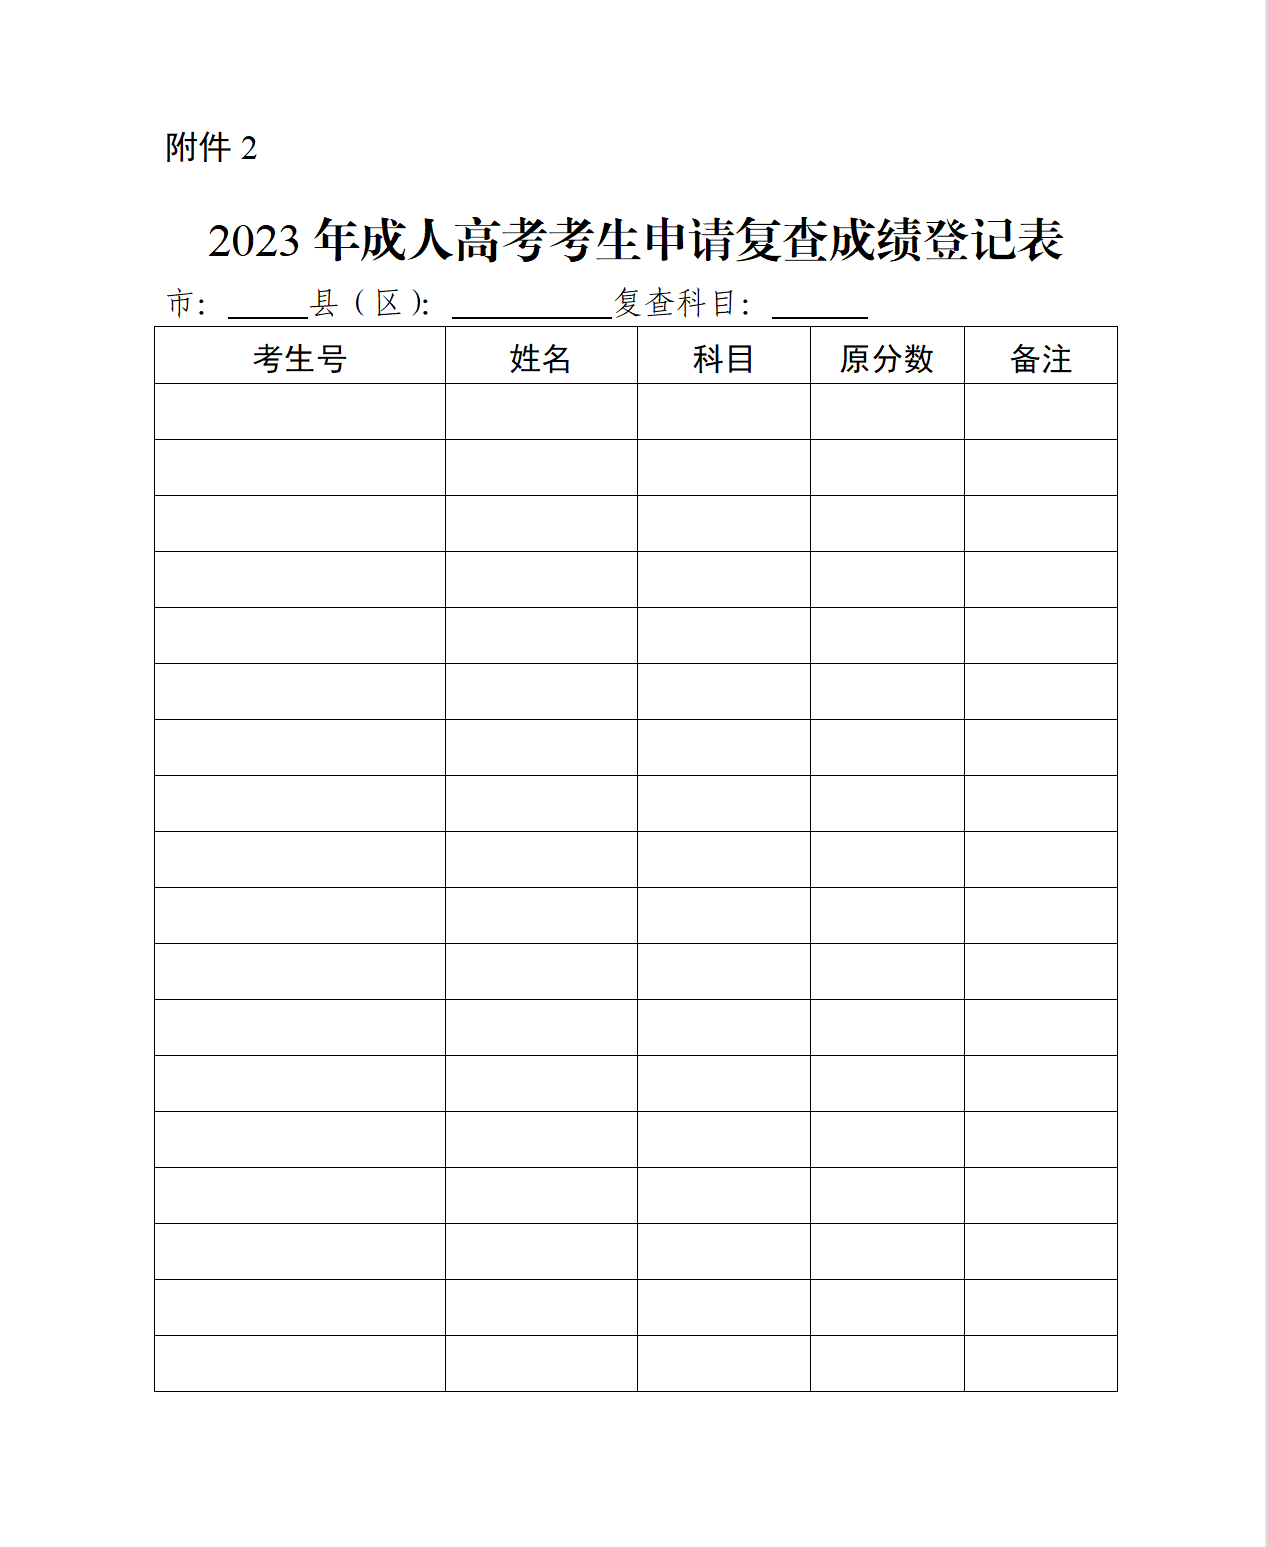 <b>2023年深圳成人高考成绩11月23日18:00公布</b>